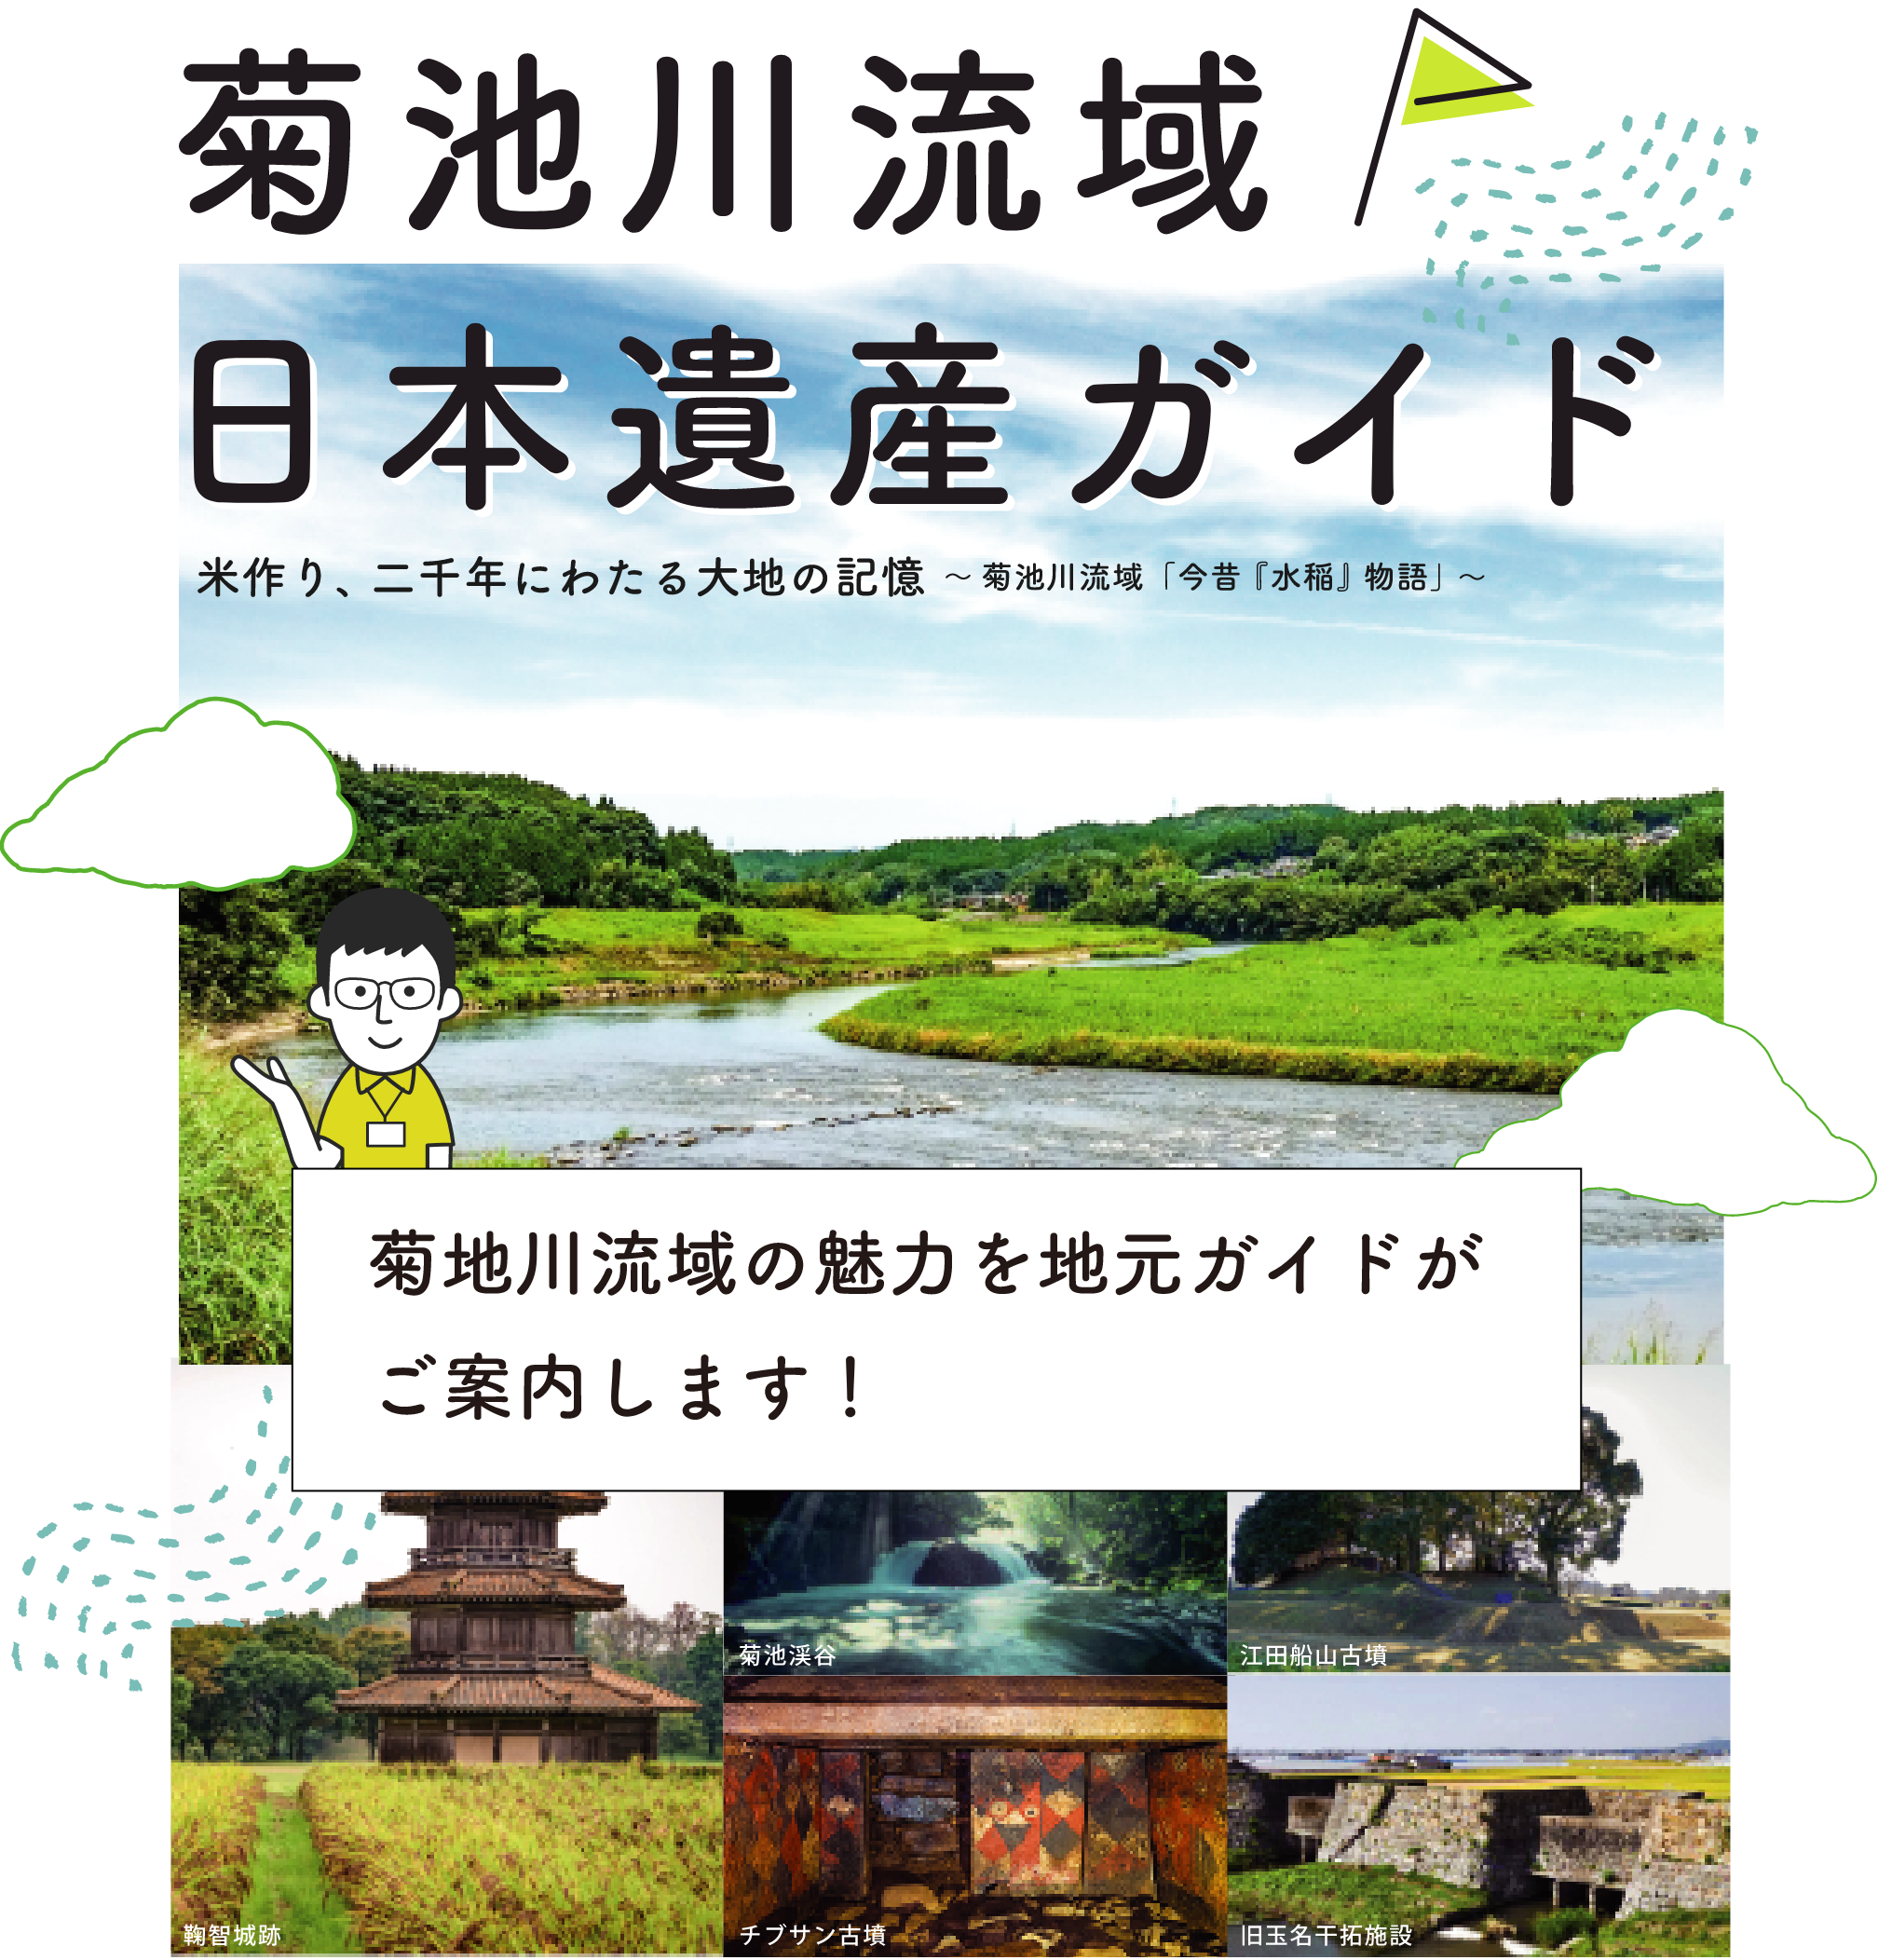 菊池川流域日本遺産ガイド | Japan Heritage of the Kikuchi River Basin